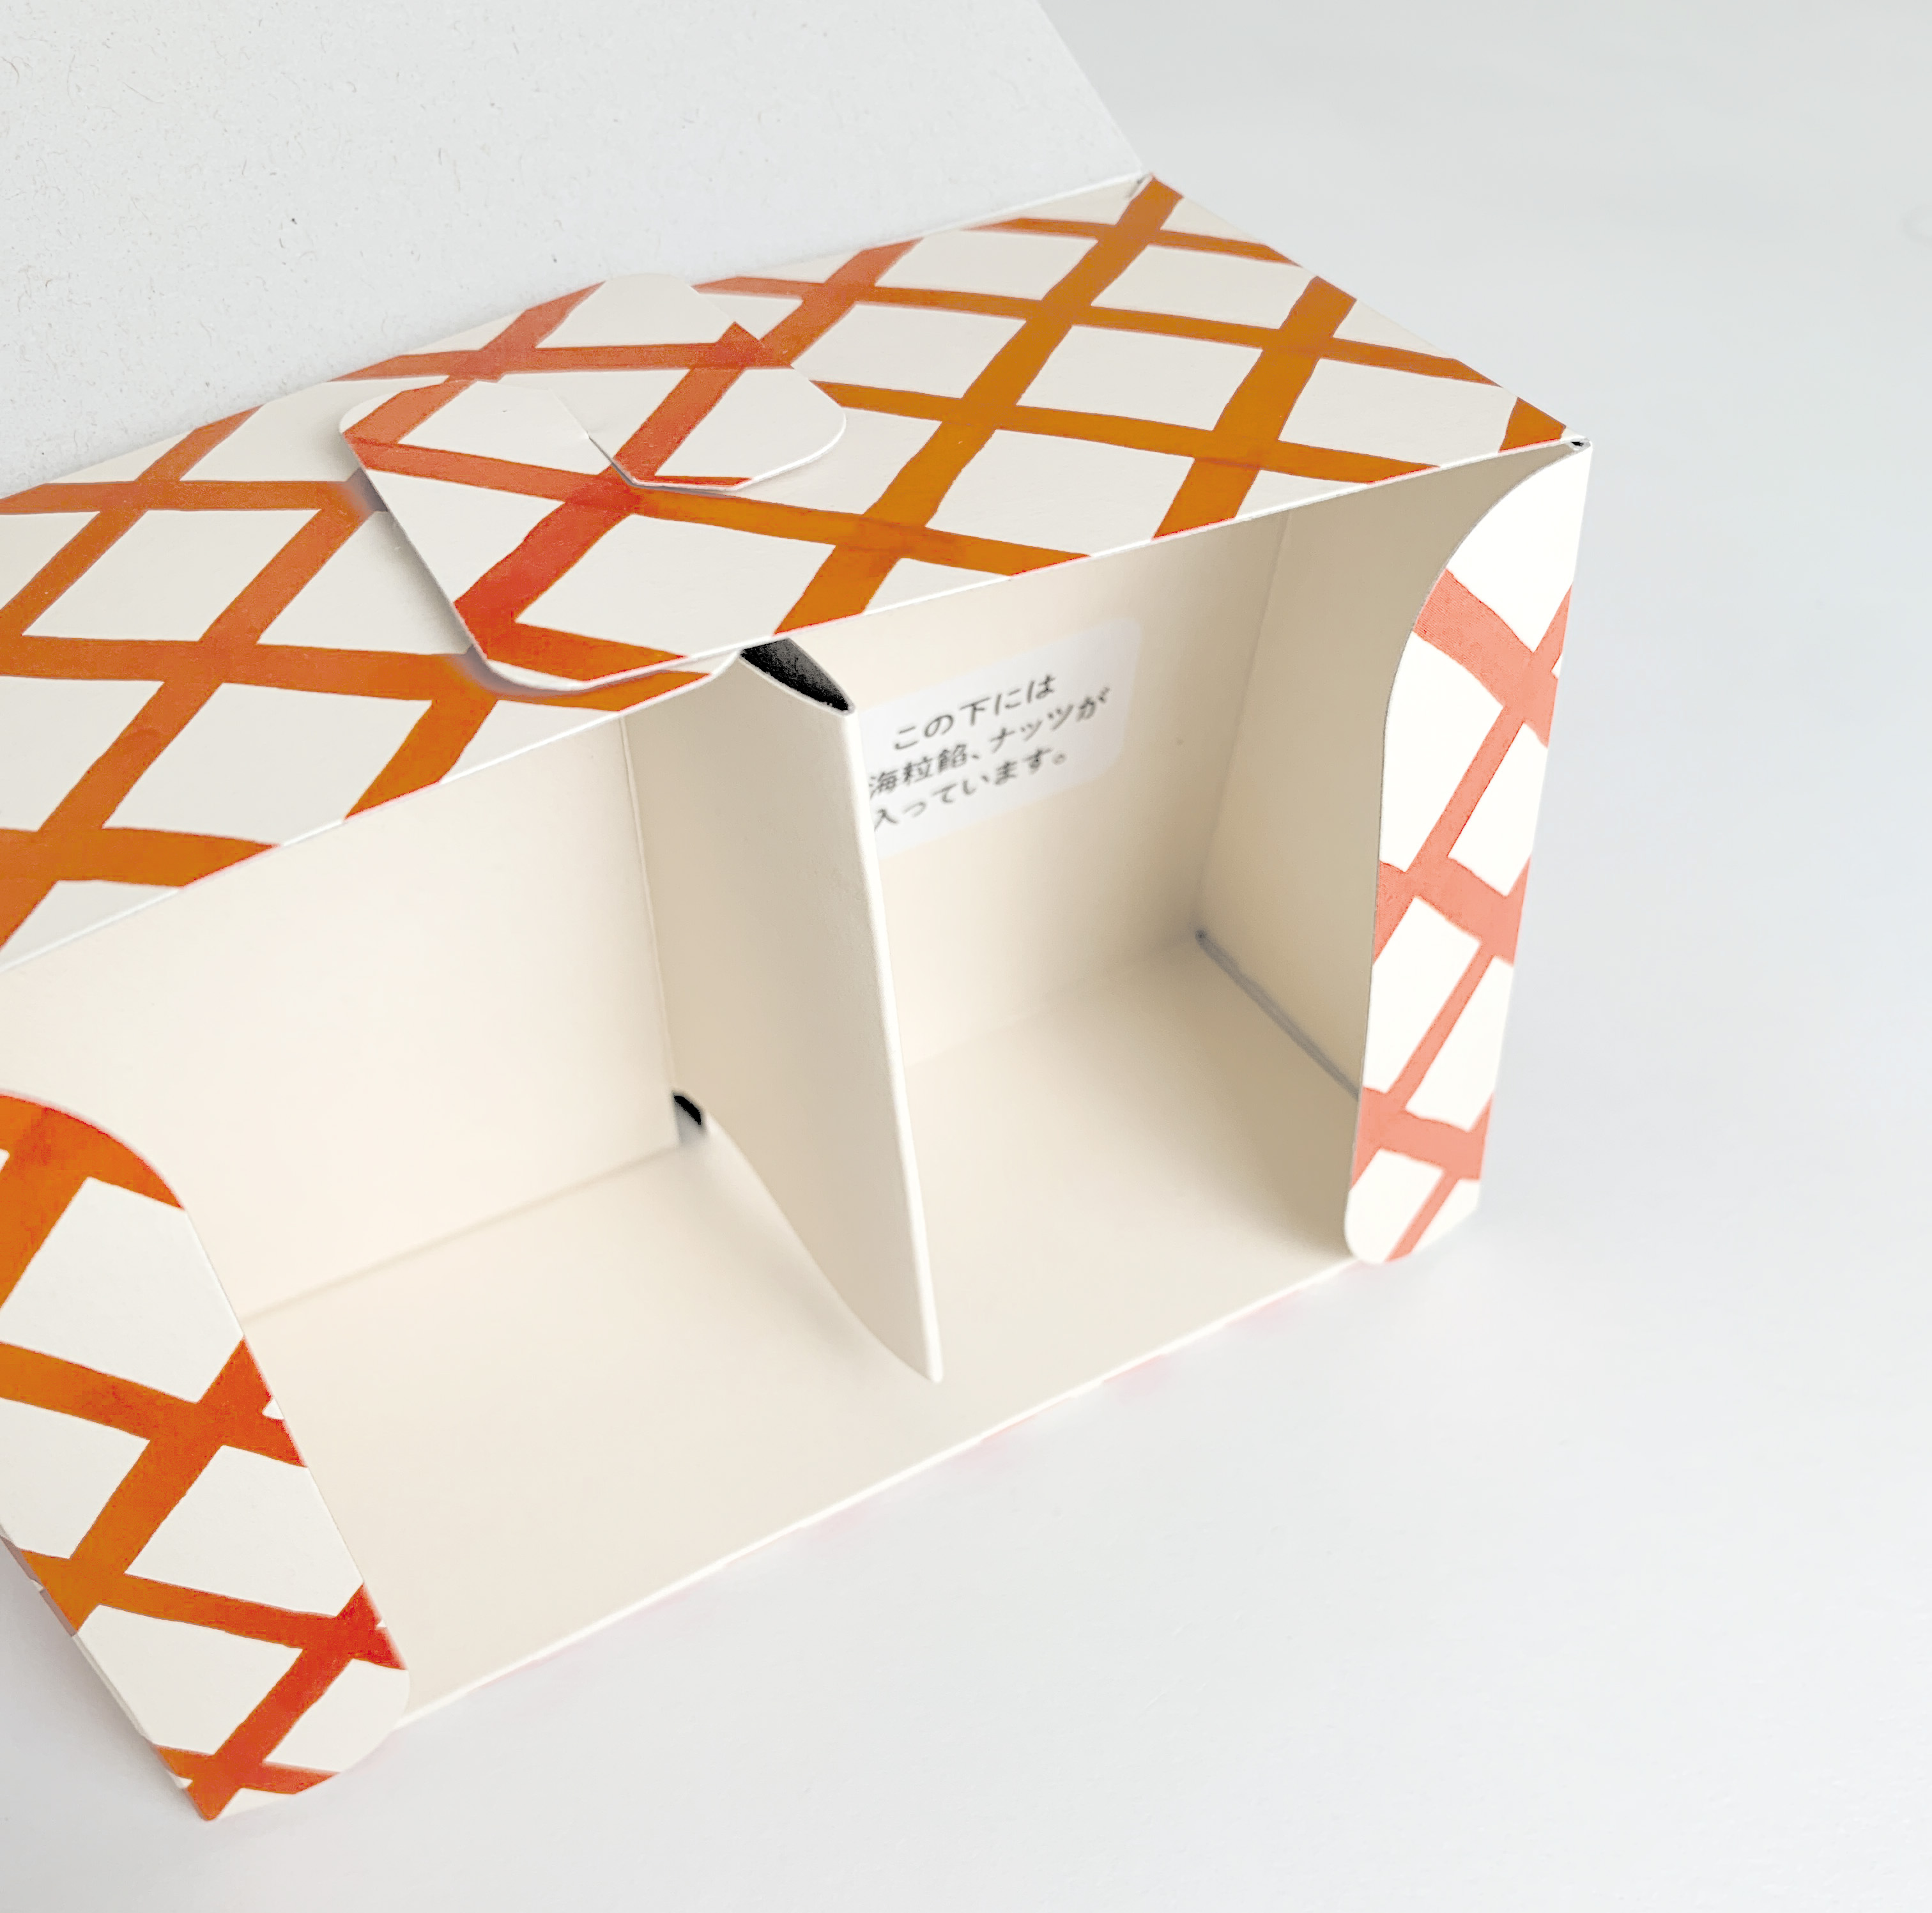 【オリジナルパッケージ 】ハムスターモナカ2個入りの箱